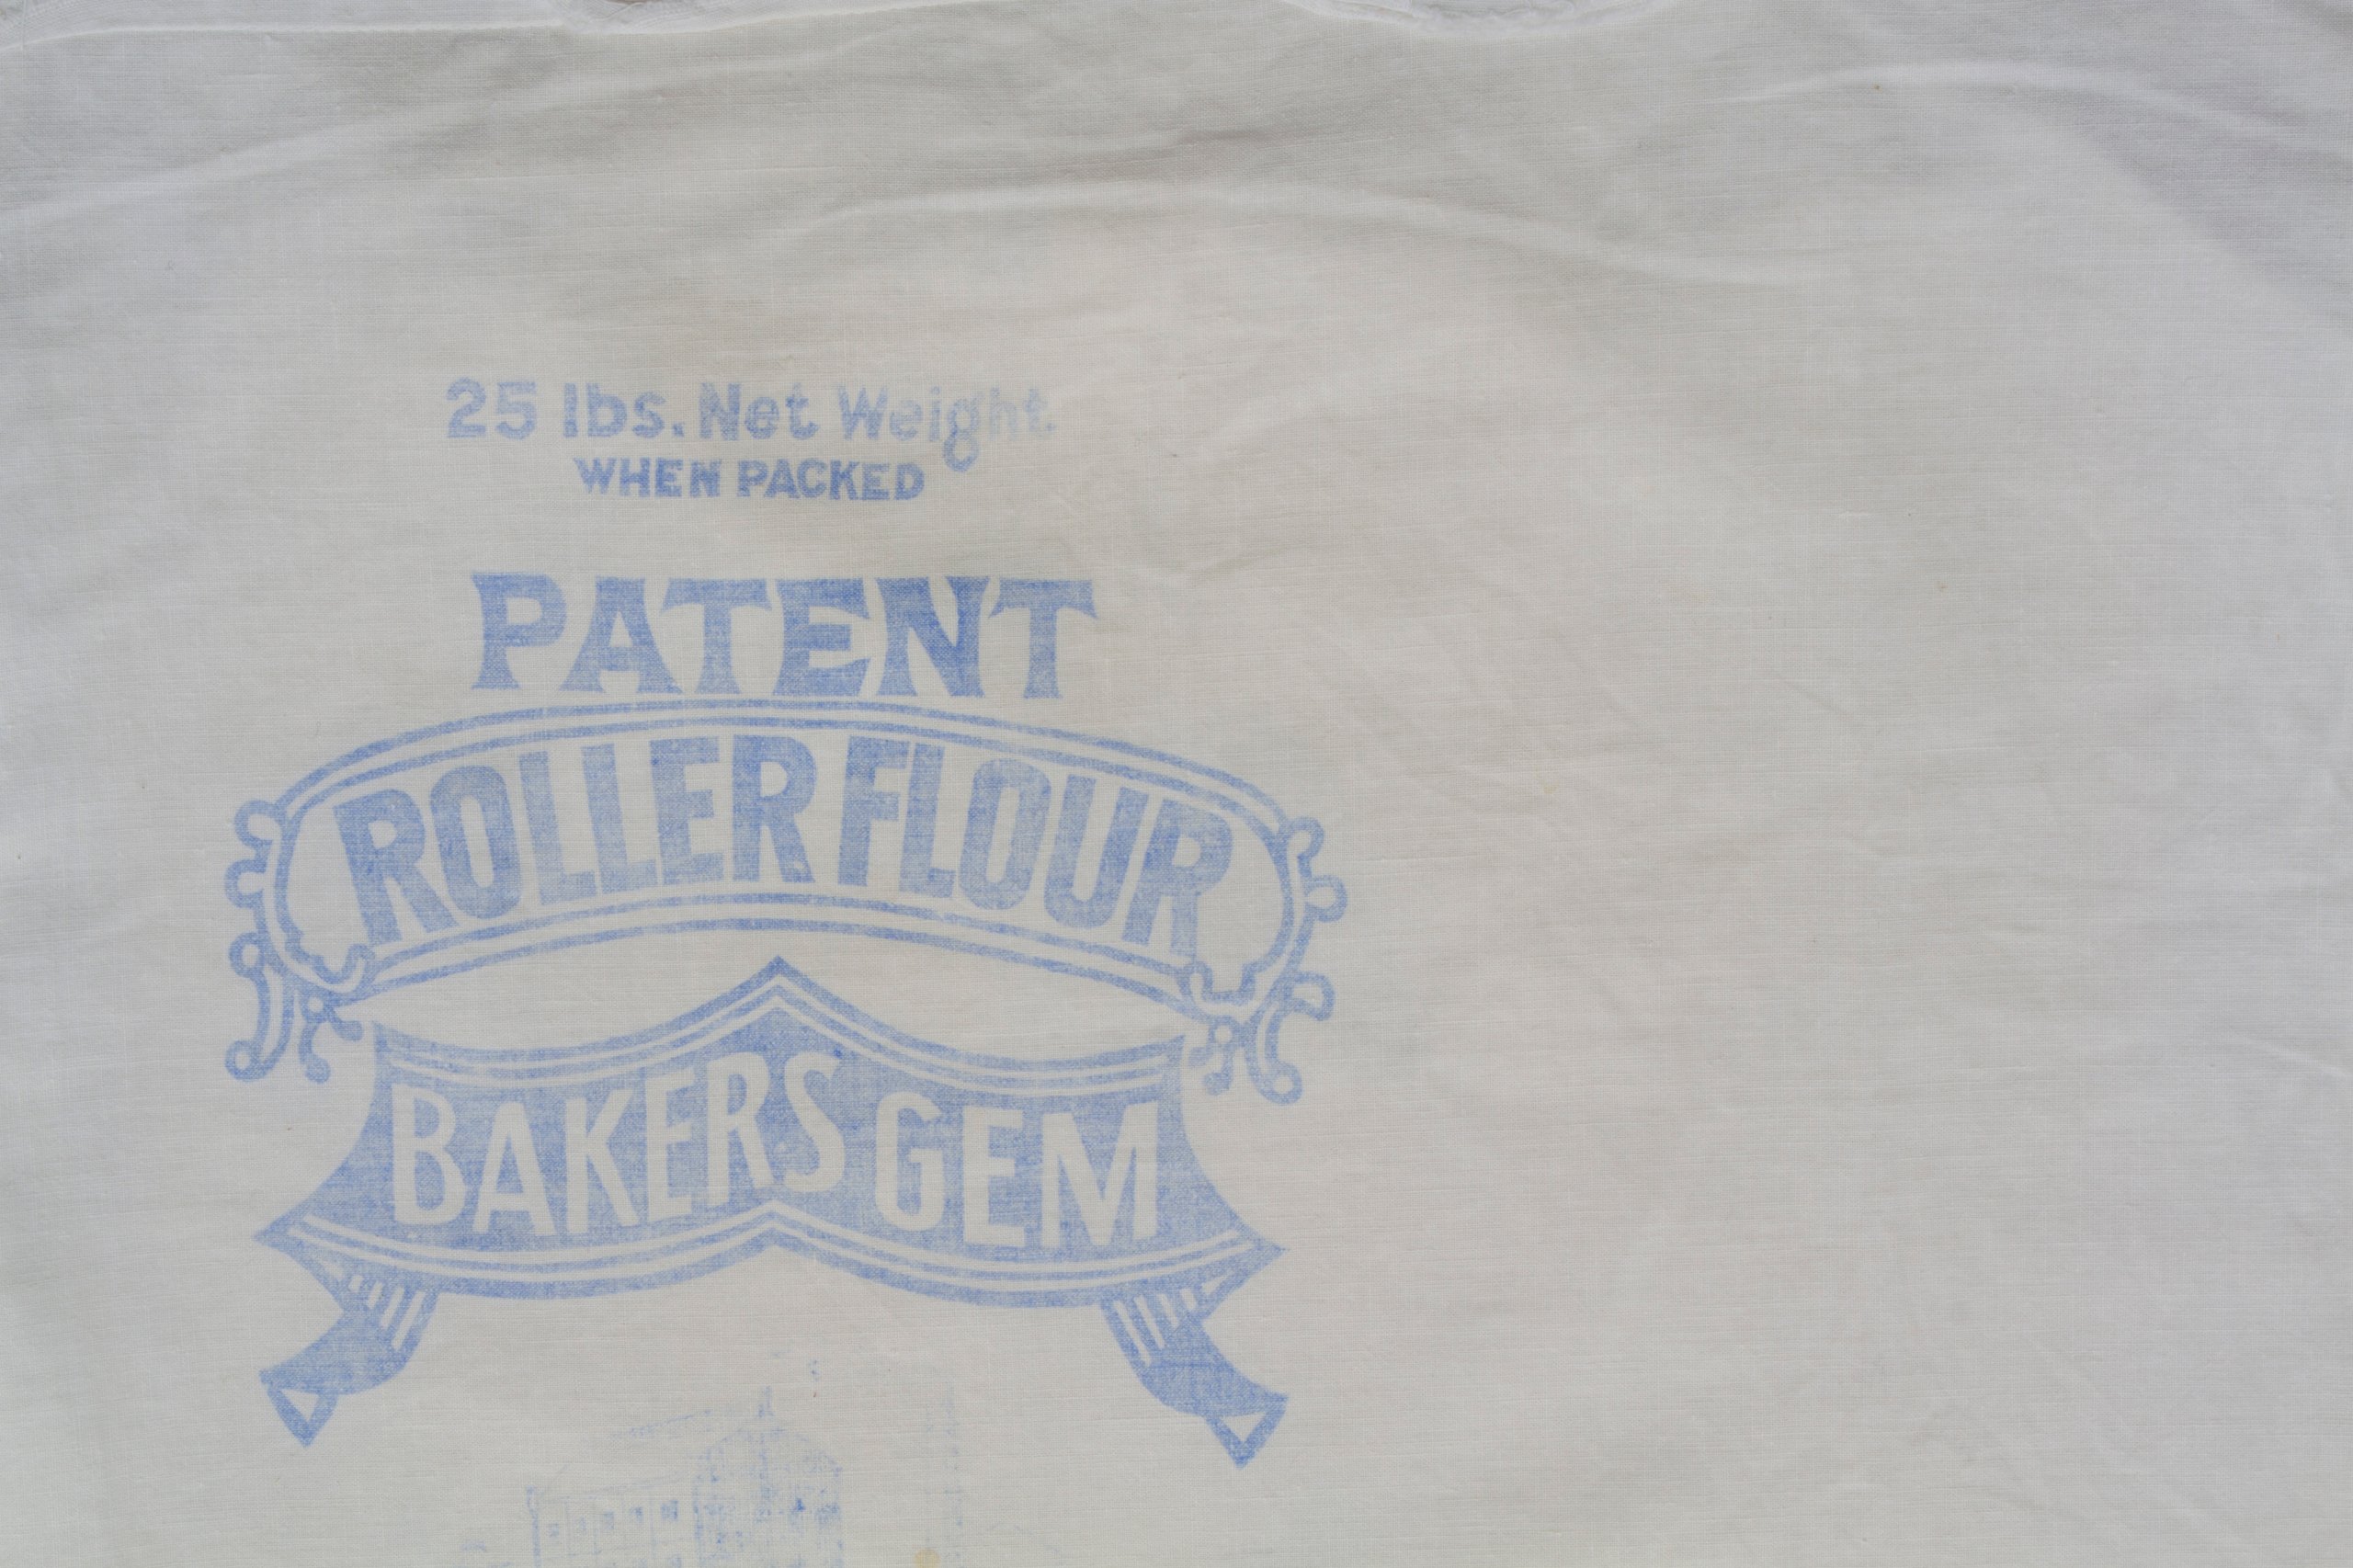 Pillowcase made from an Albury flour mill bag